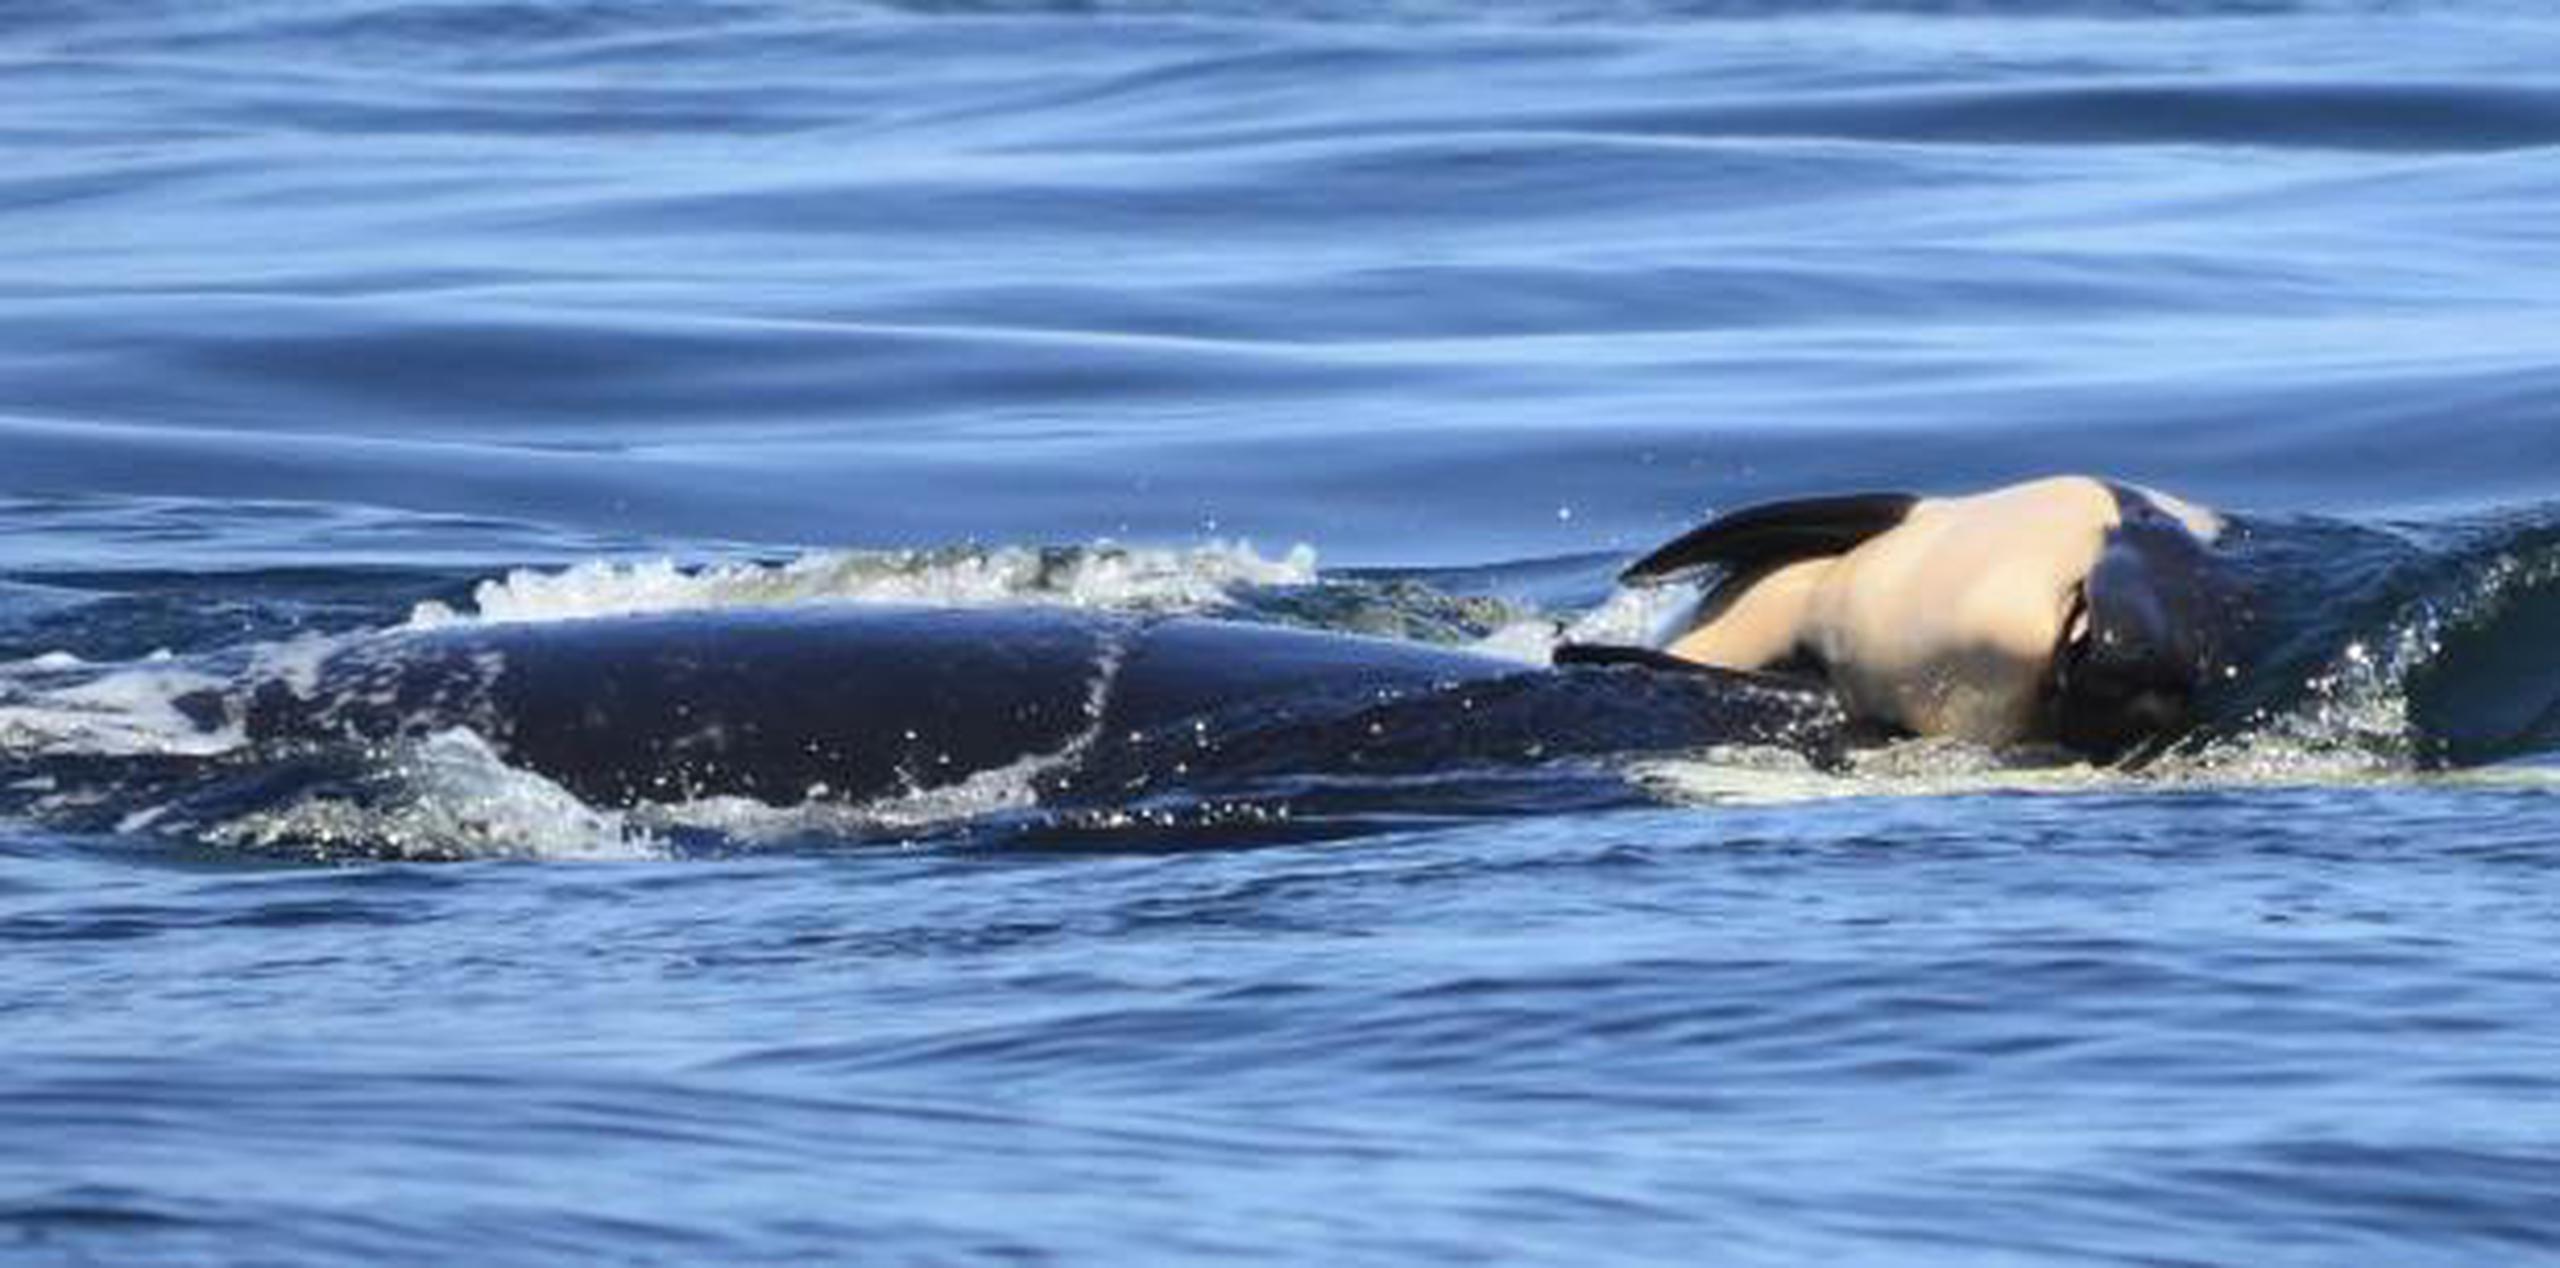 La orca, conocida como J35, ha estado empujando a su cría muerta durante varios kilómetros en las aguas del estado de Washington y Columbia Británica. (Michael Weiss / Center for Whale Research vía AP)